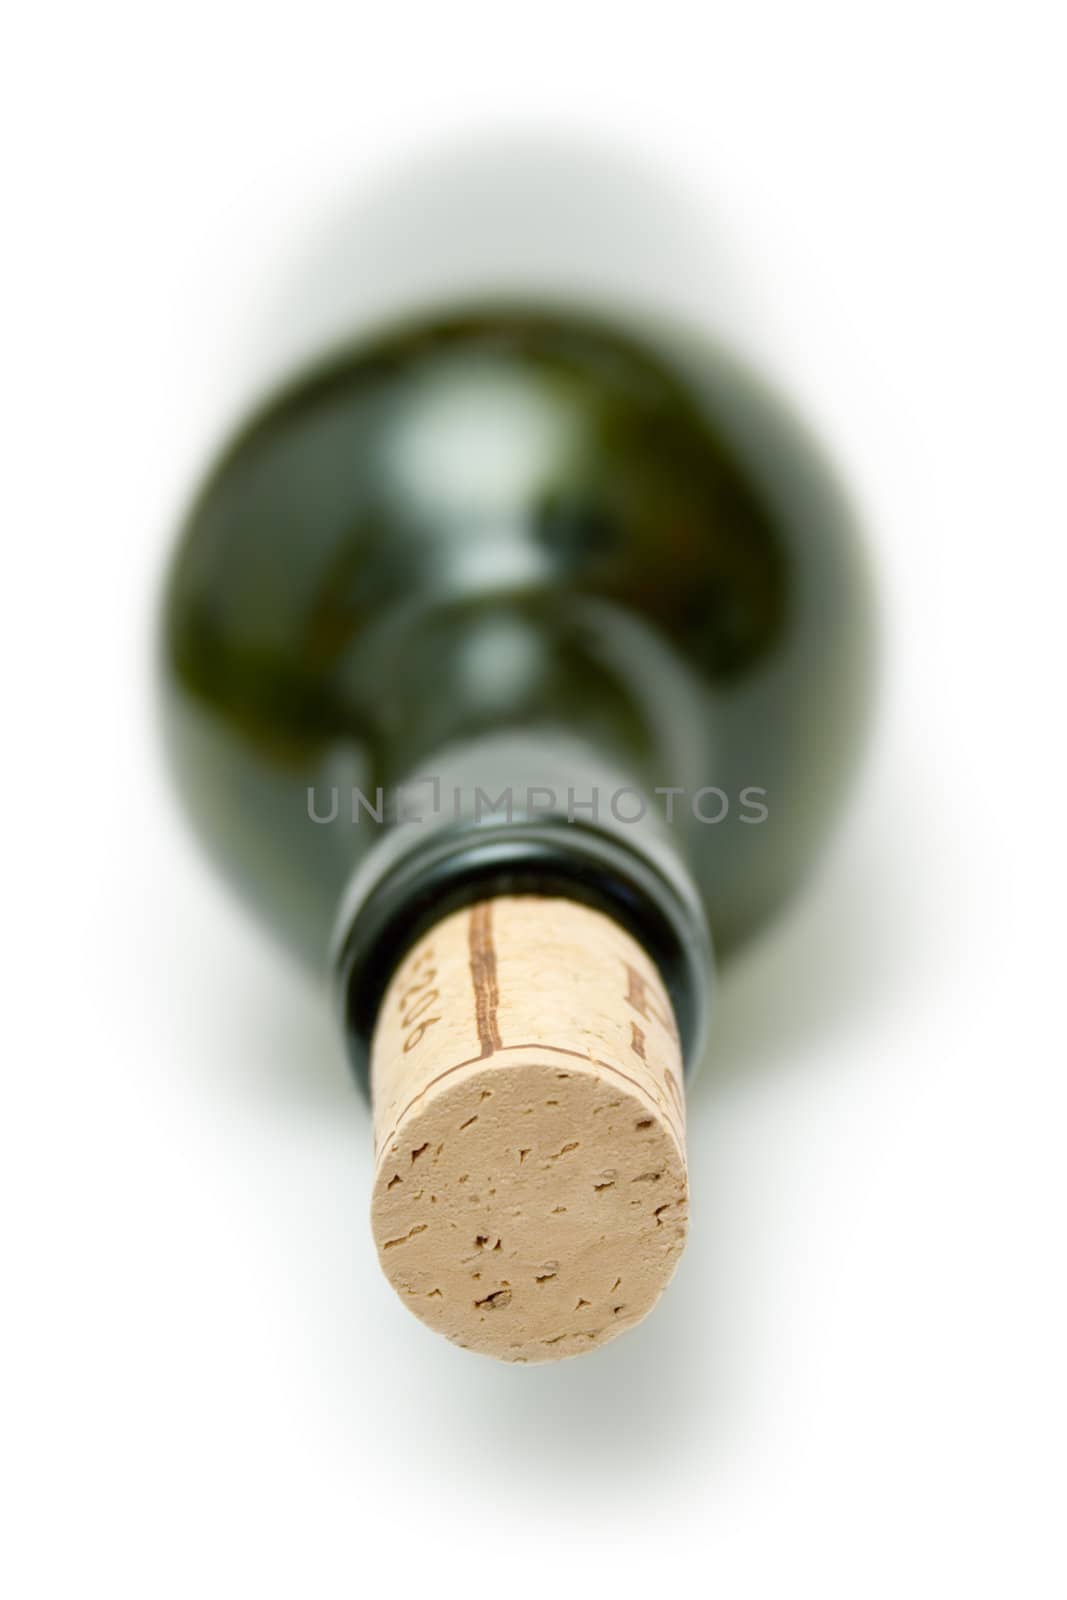 Corked Green Wine Bottle by winterling